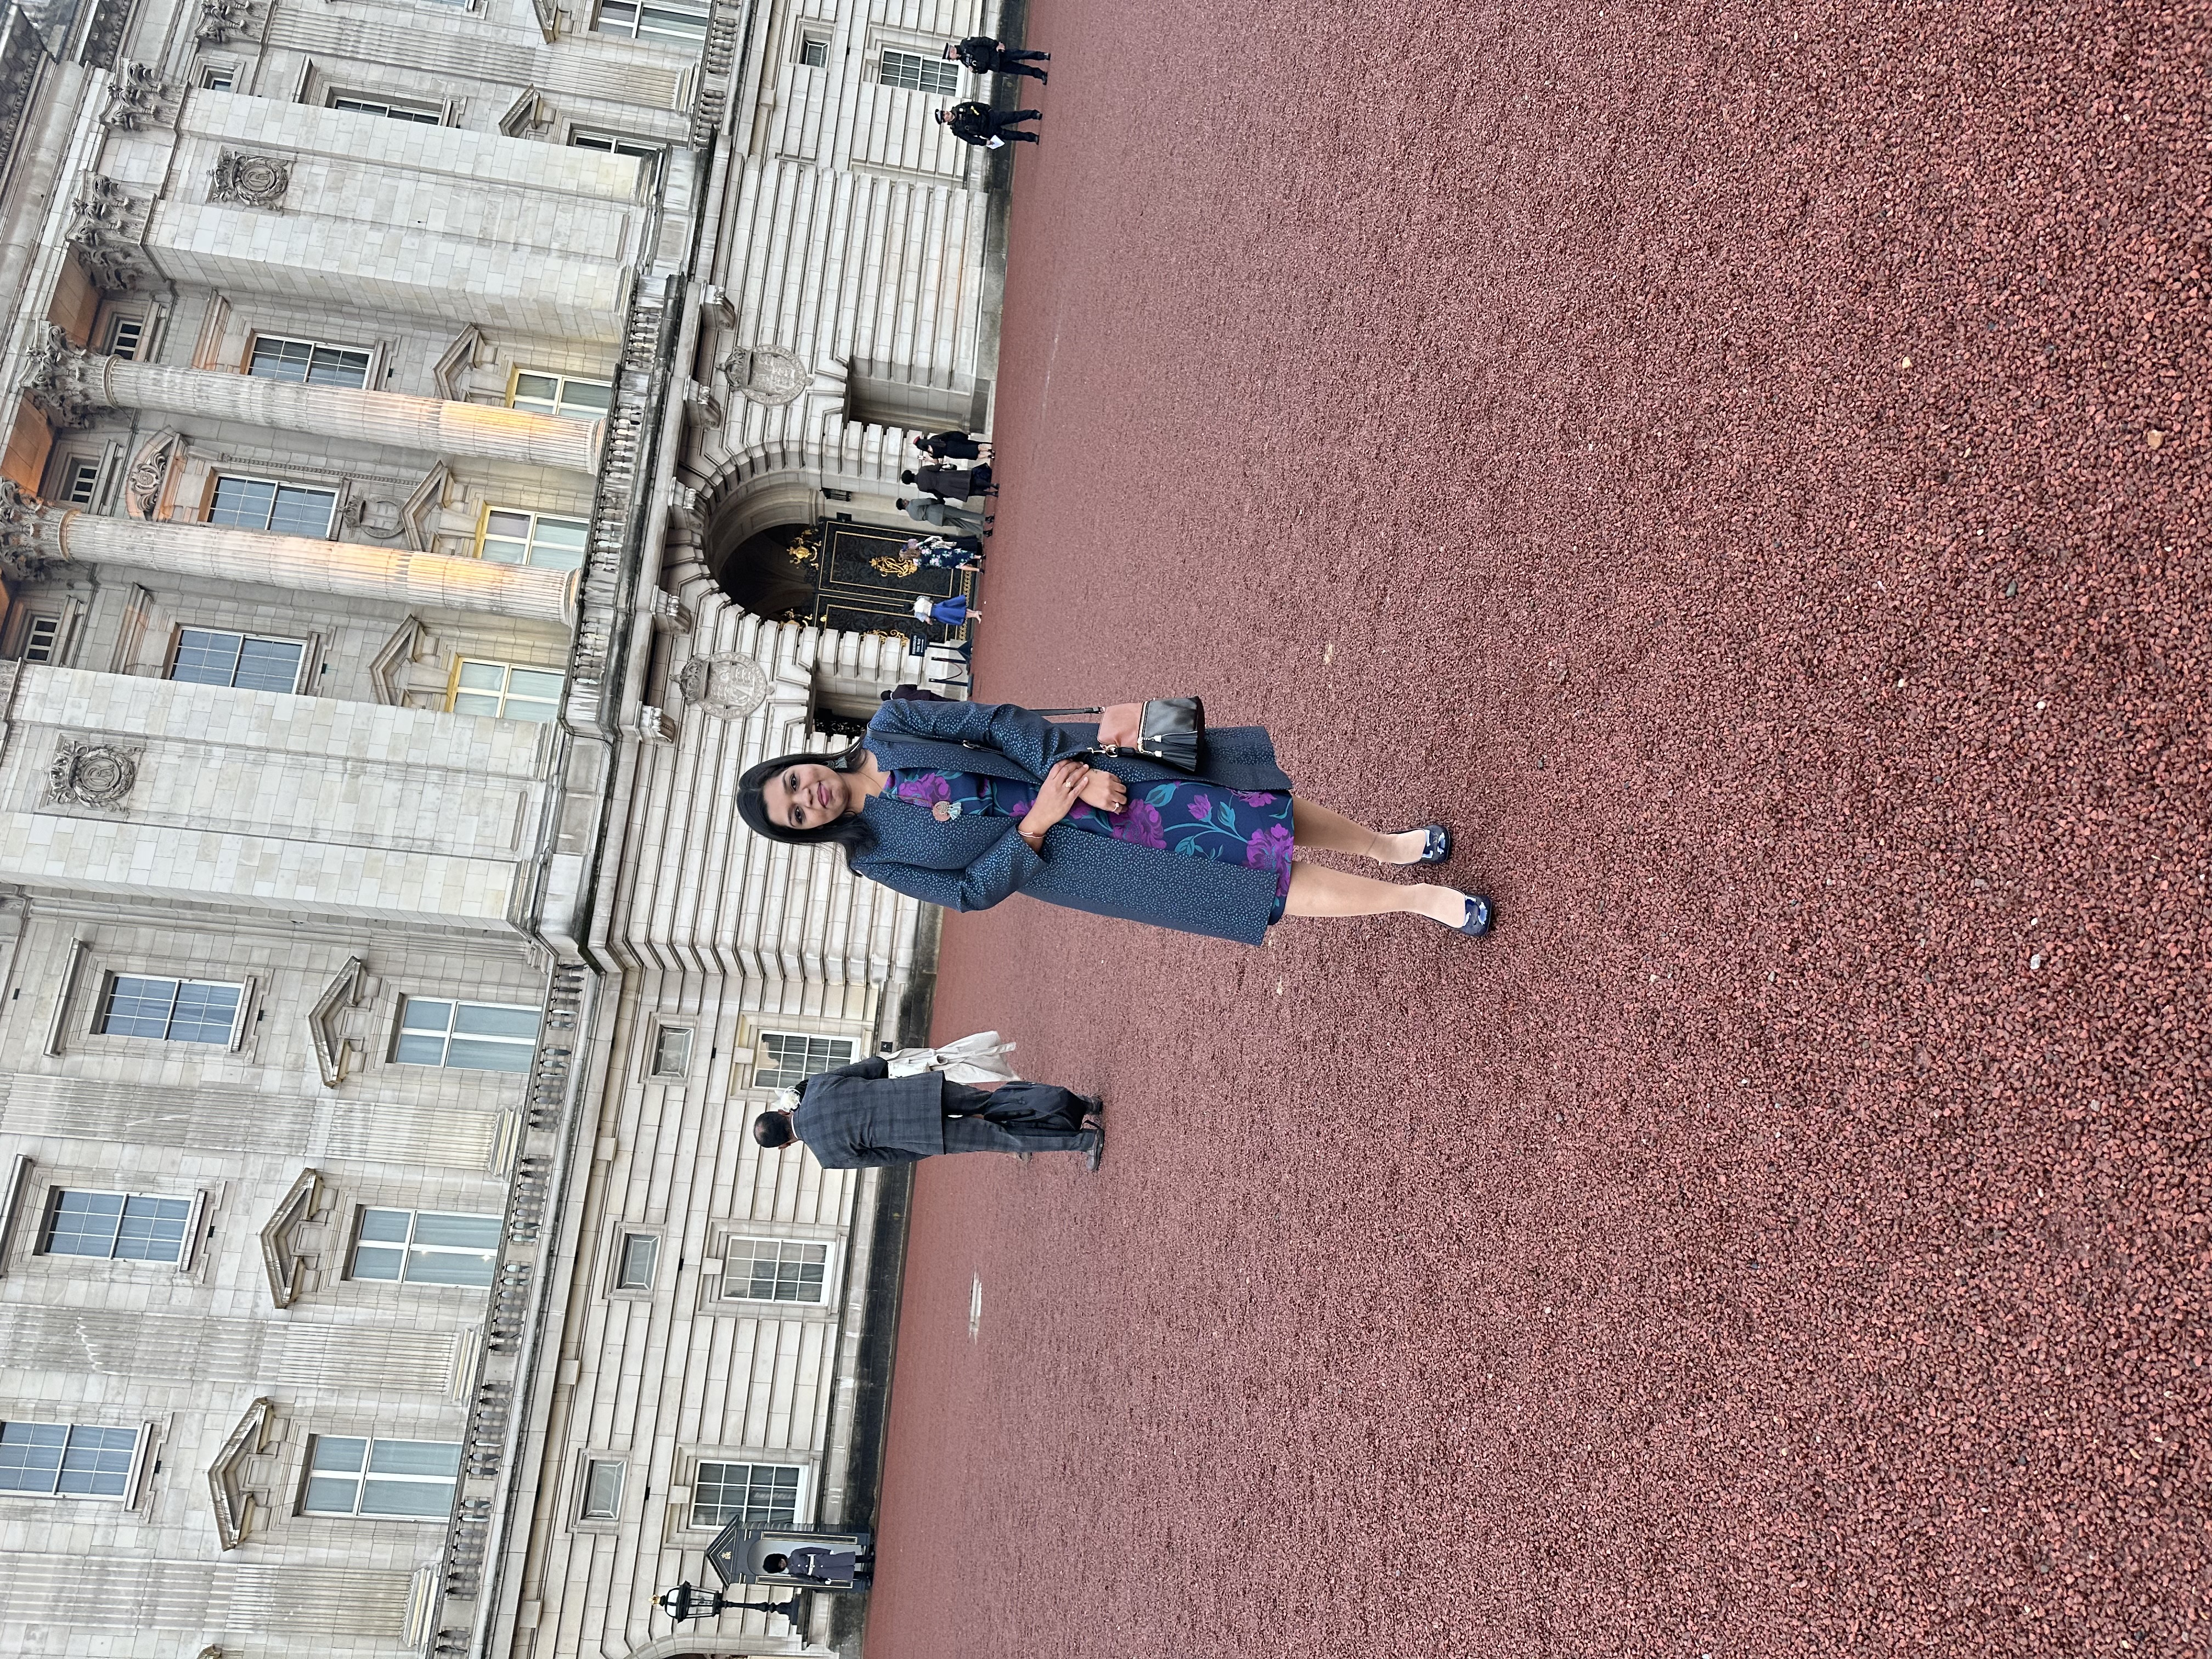 Swapna stood outside Buckingham Palace